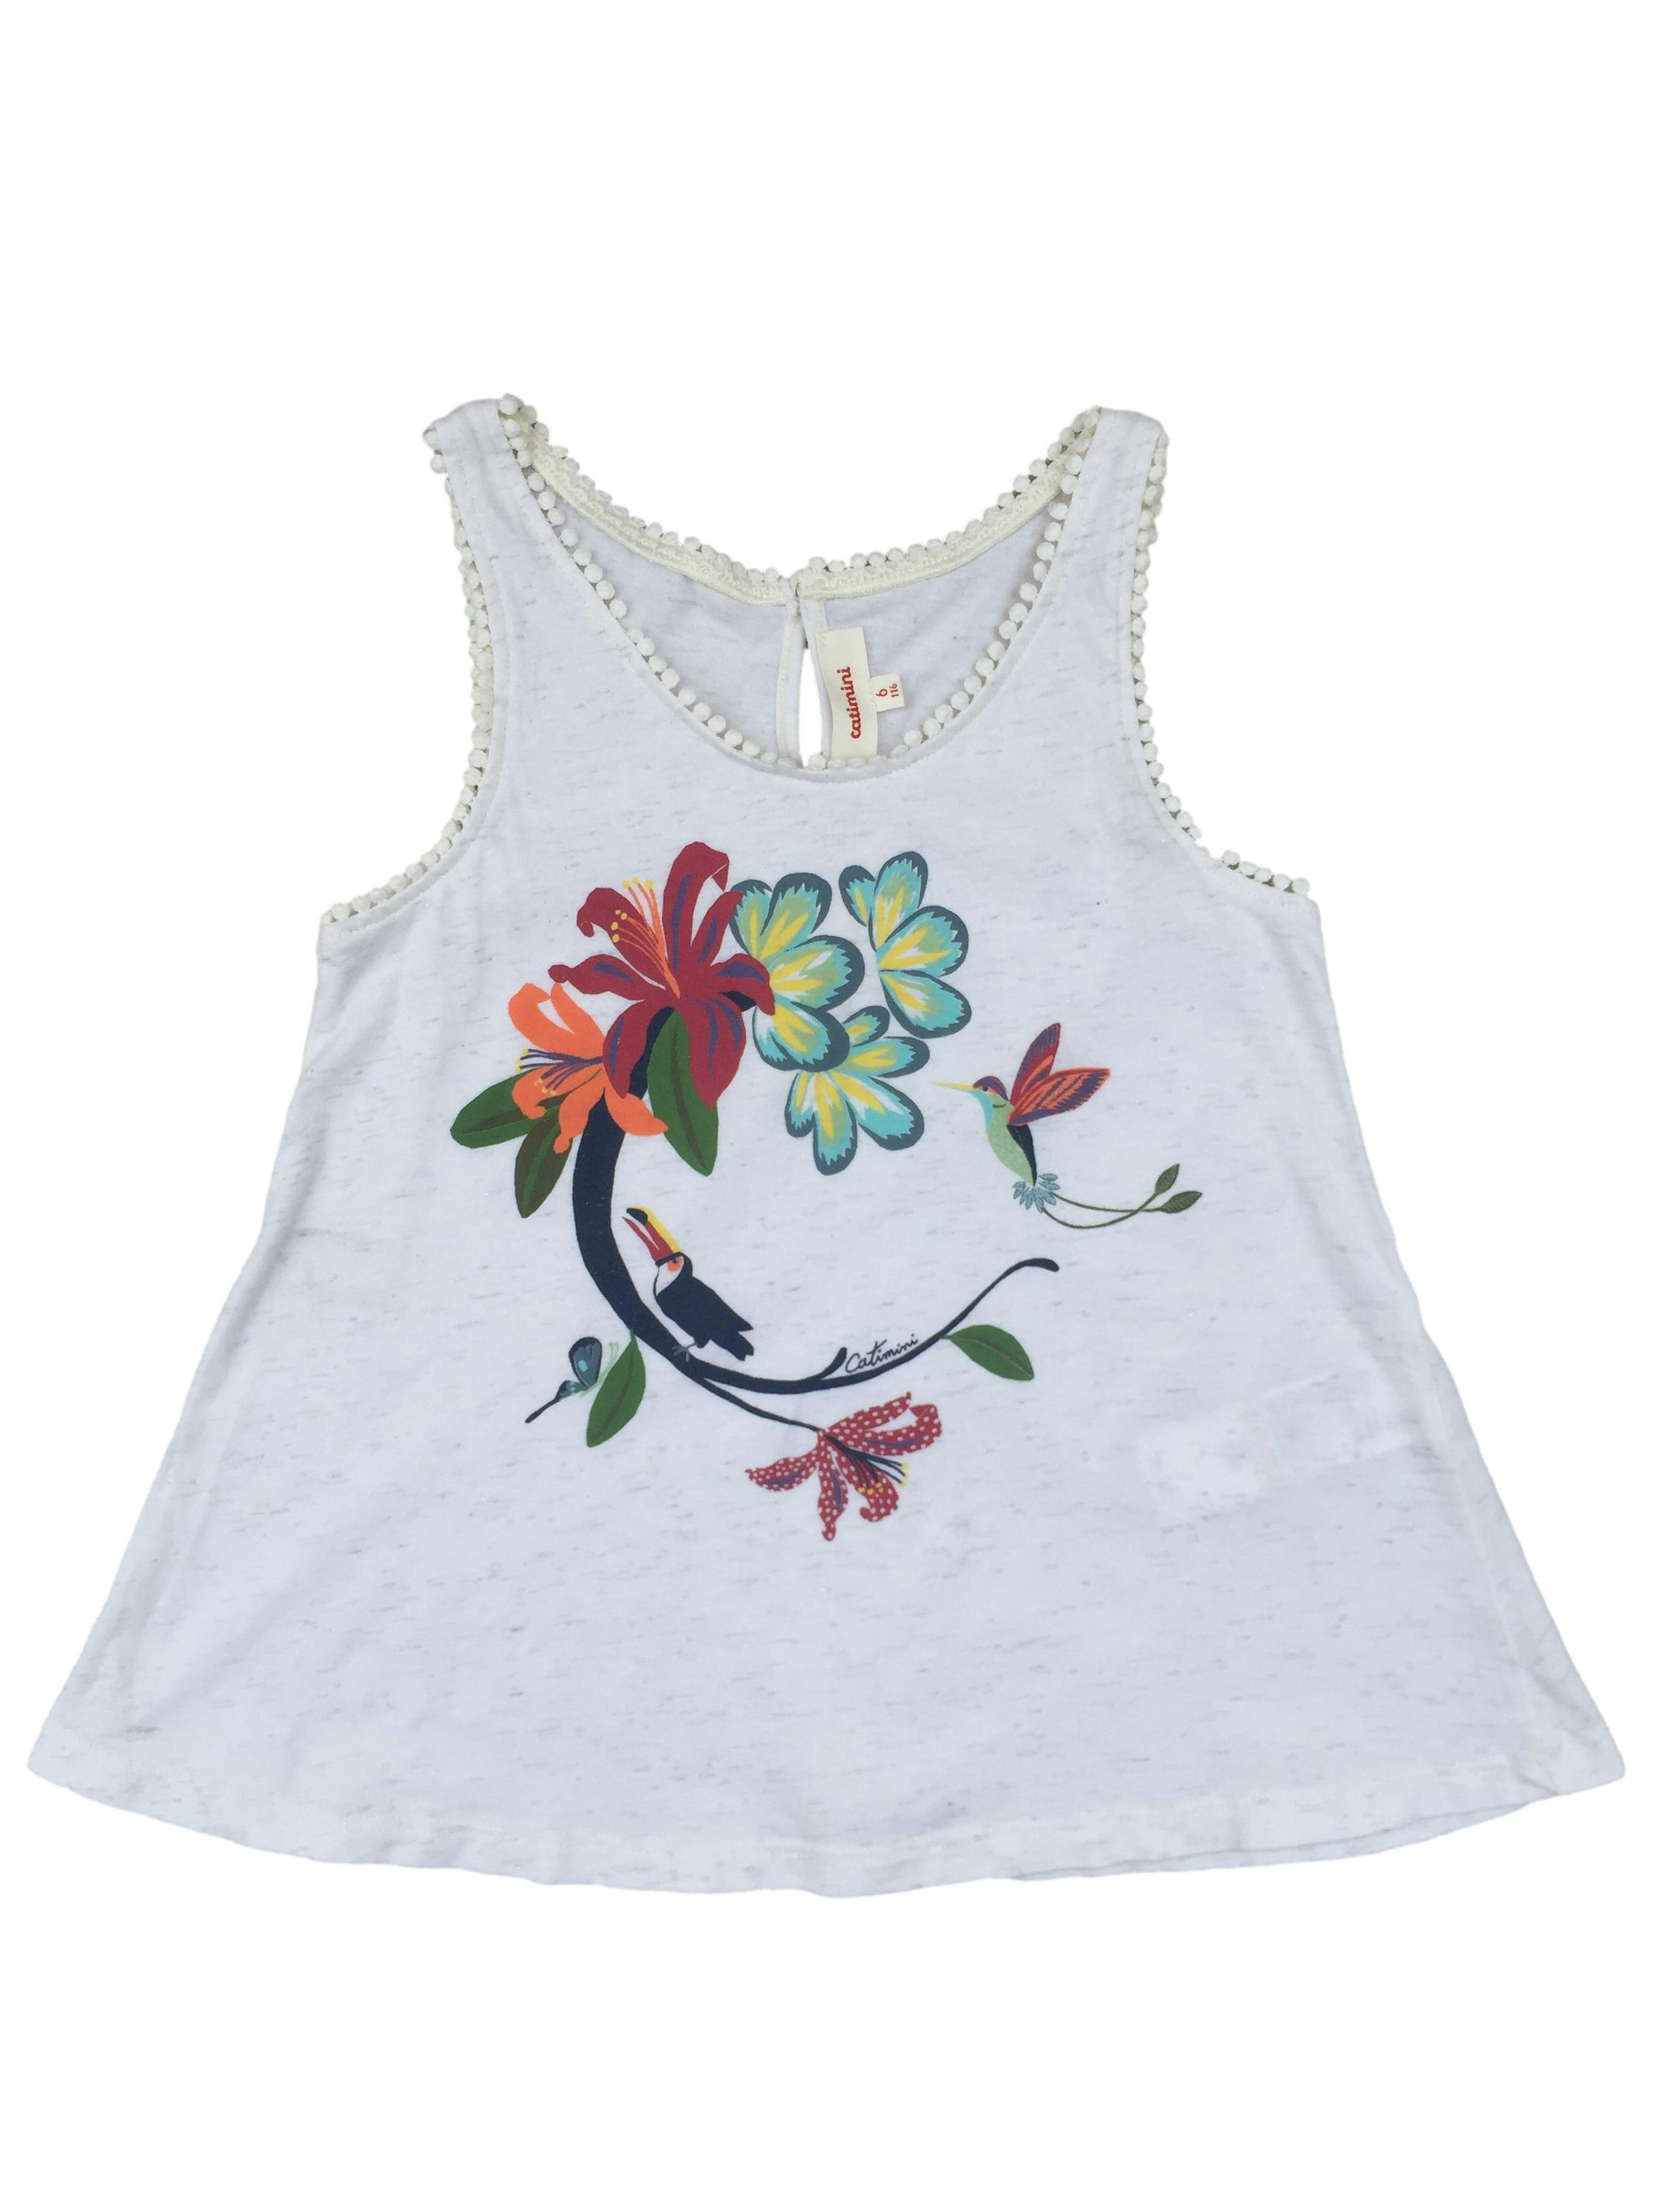 Blusa blanca Catimina con estampado floral y aves.